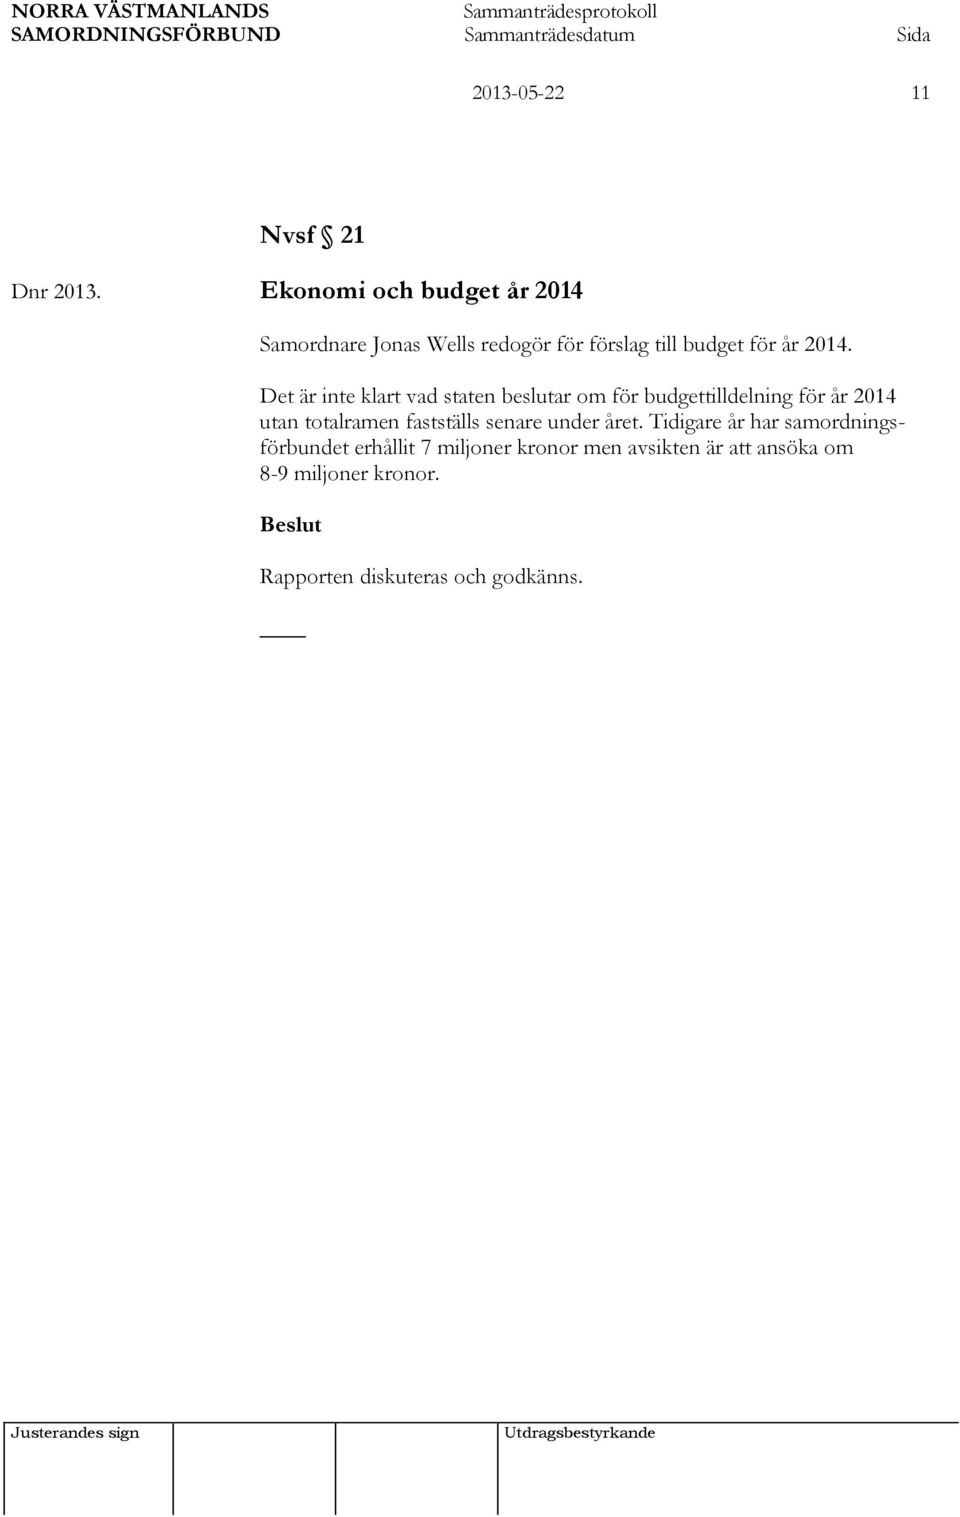 Det är inte klart vad staten beslutar om för budgettilldelning för år 2014 utan totalramen